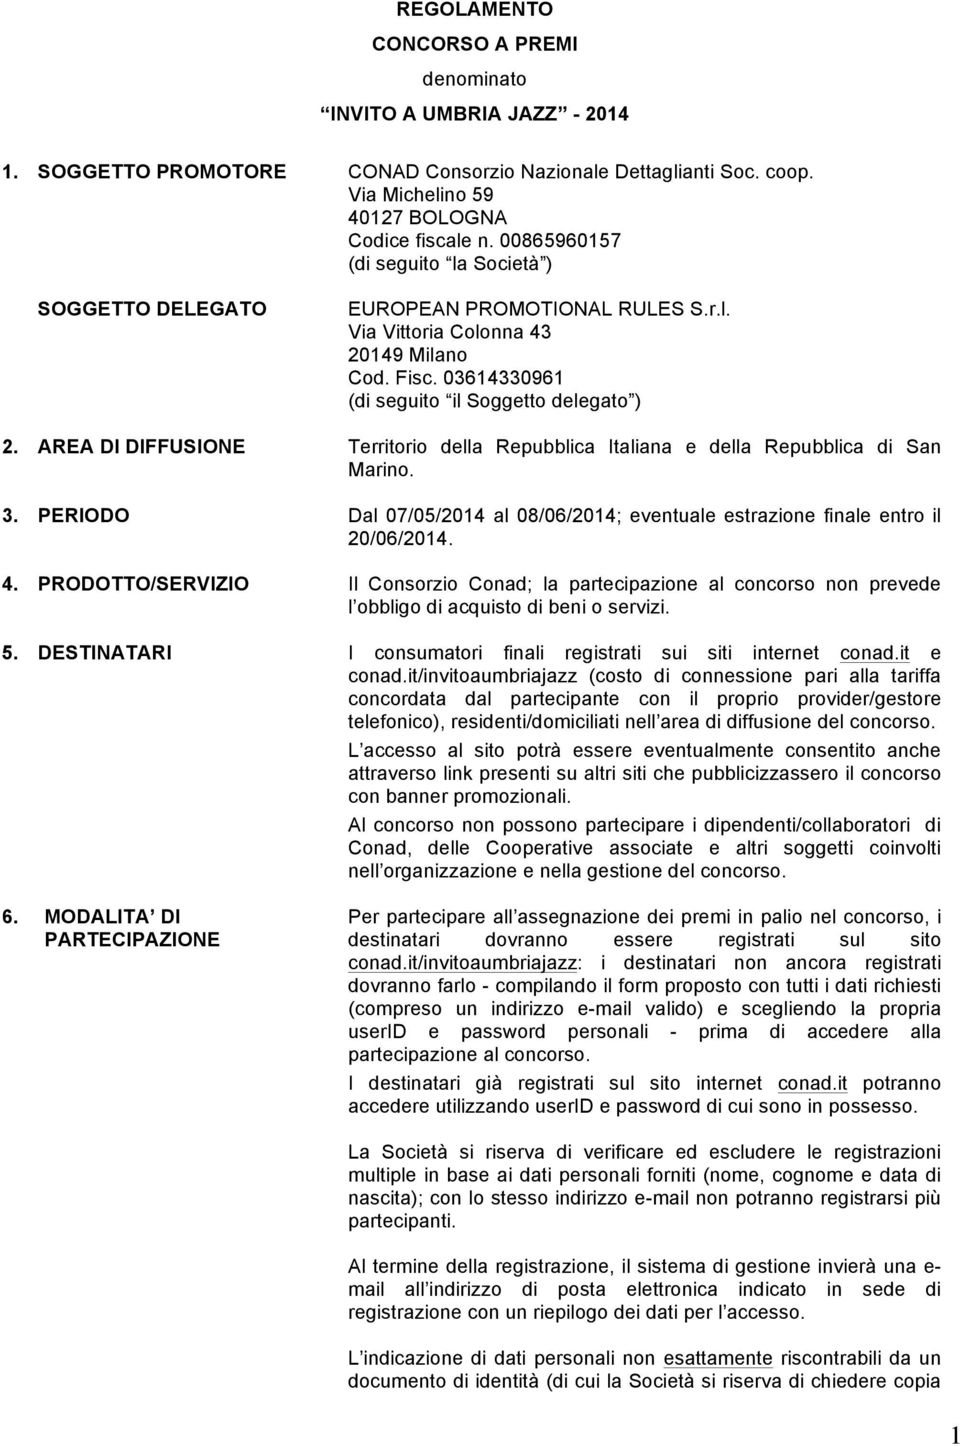 AREA DI DIFFUSIONE Territorio della Repubblica Italiana e della Repubblica di San Marino. 3. PERIODO Dal 07/05/2014 al 08/06/2014; eventuale estrazione finale entro il 20/06/2014. 4.